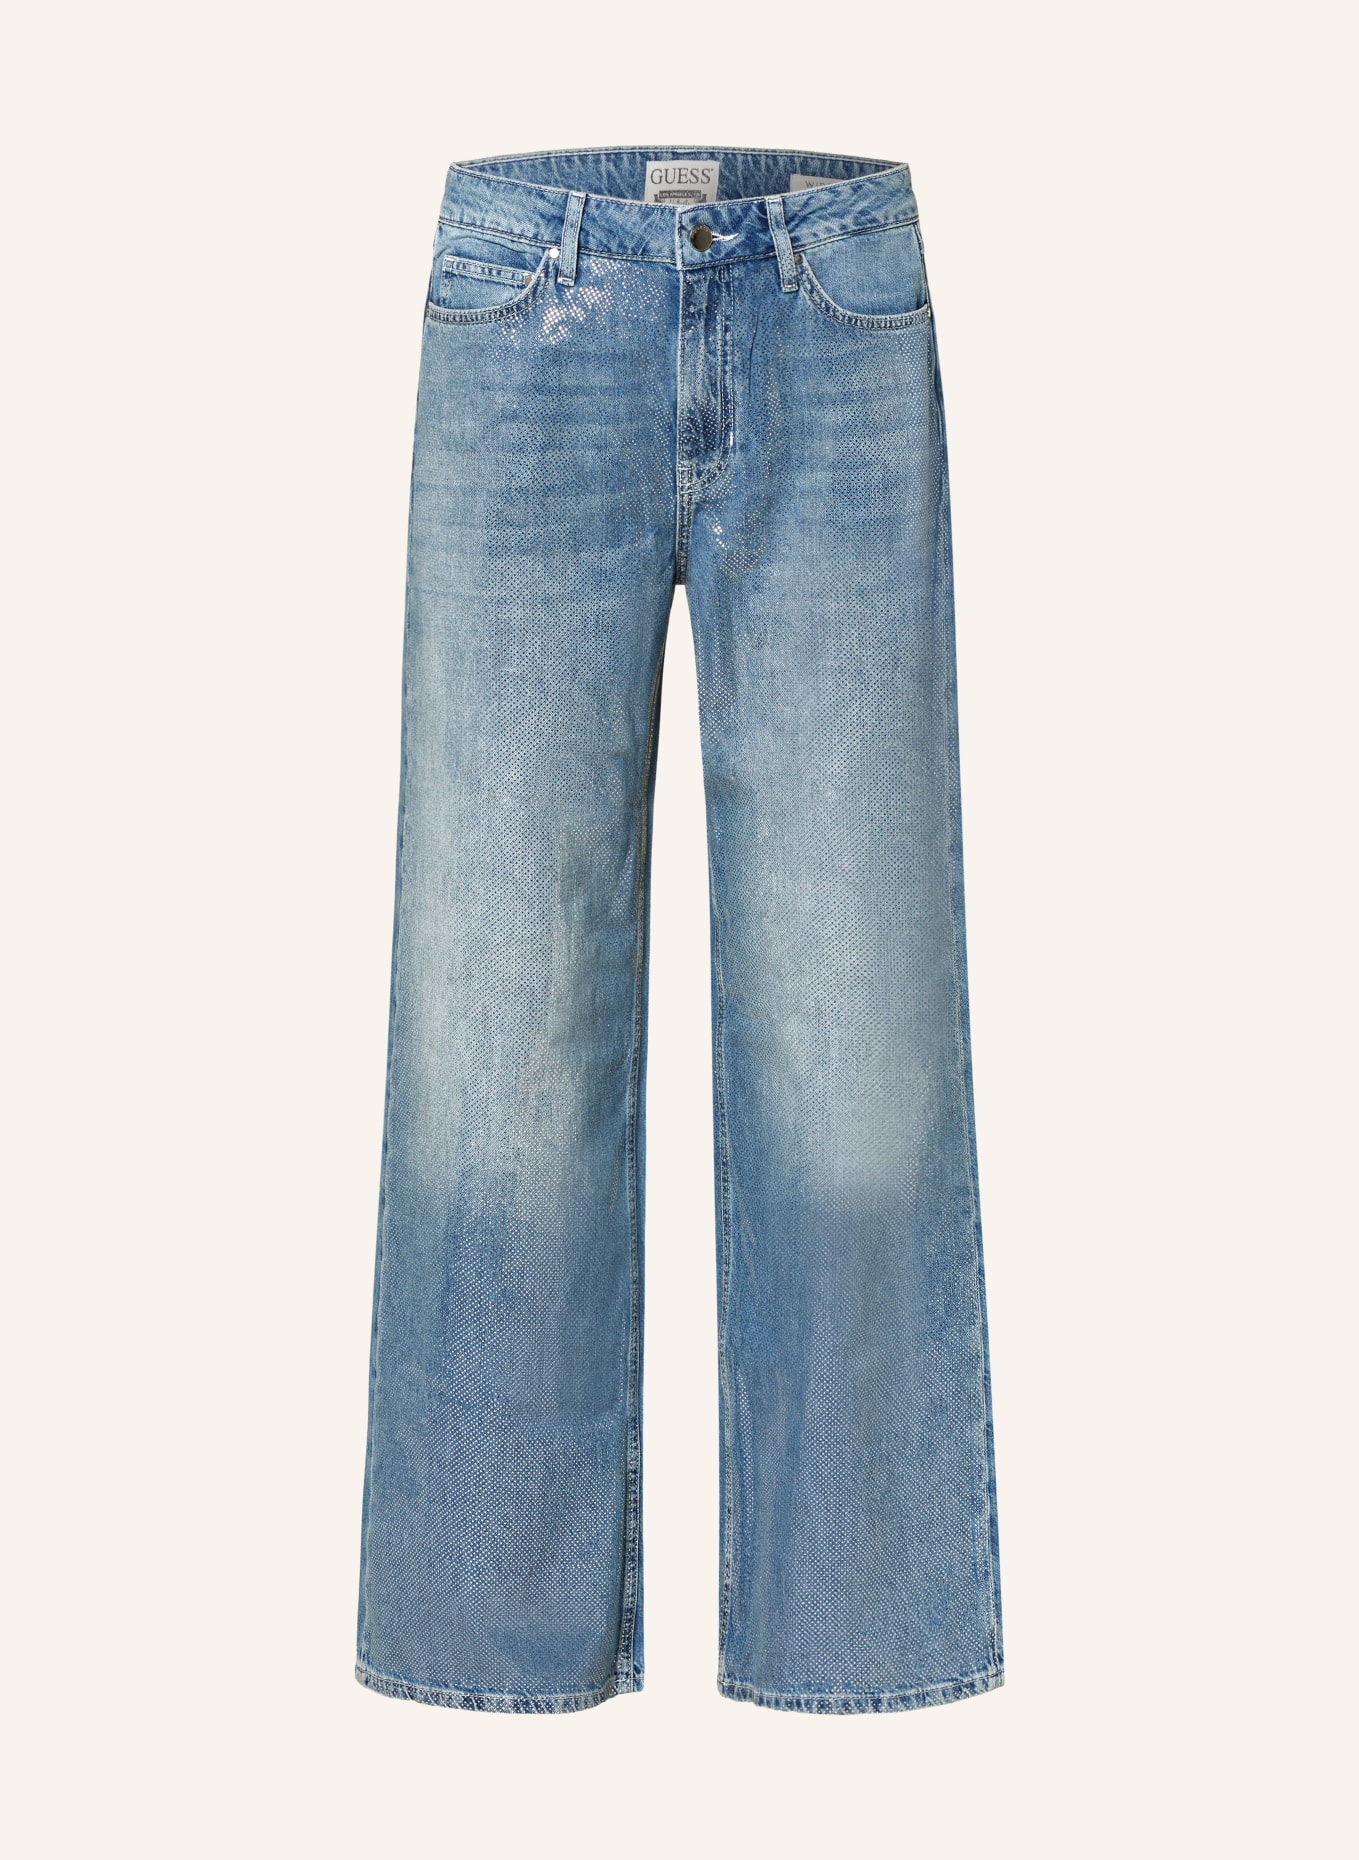 GUESS Straight Jeans BELLFLOWER mit Schmucksteinen, Farbe: RIC0 COCORICO (Bild 1)